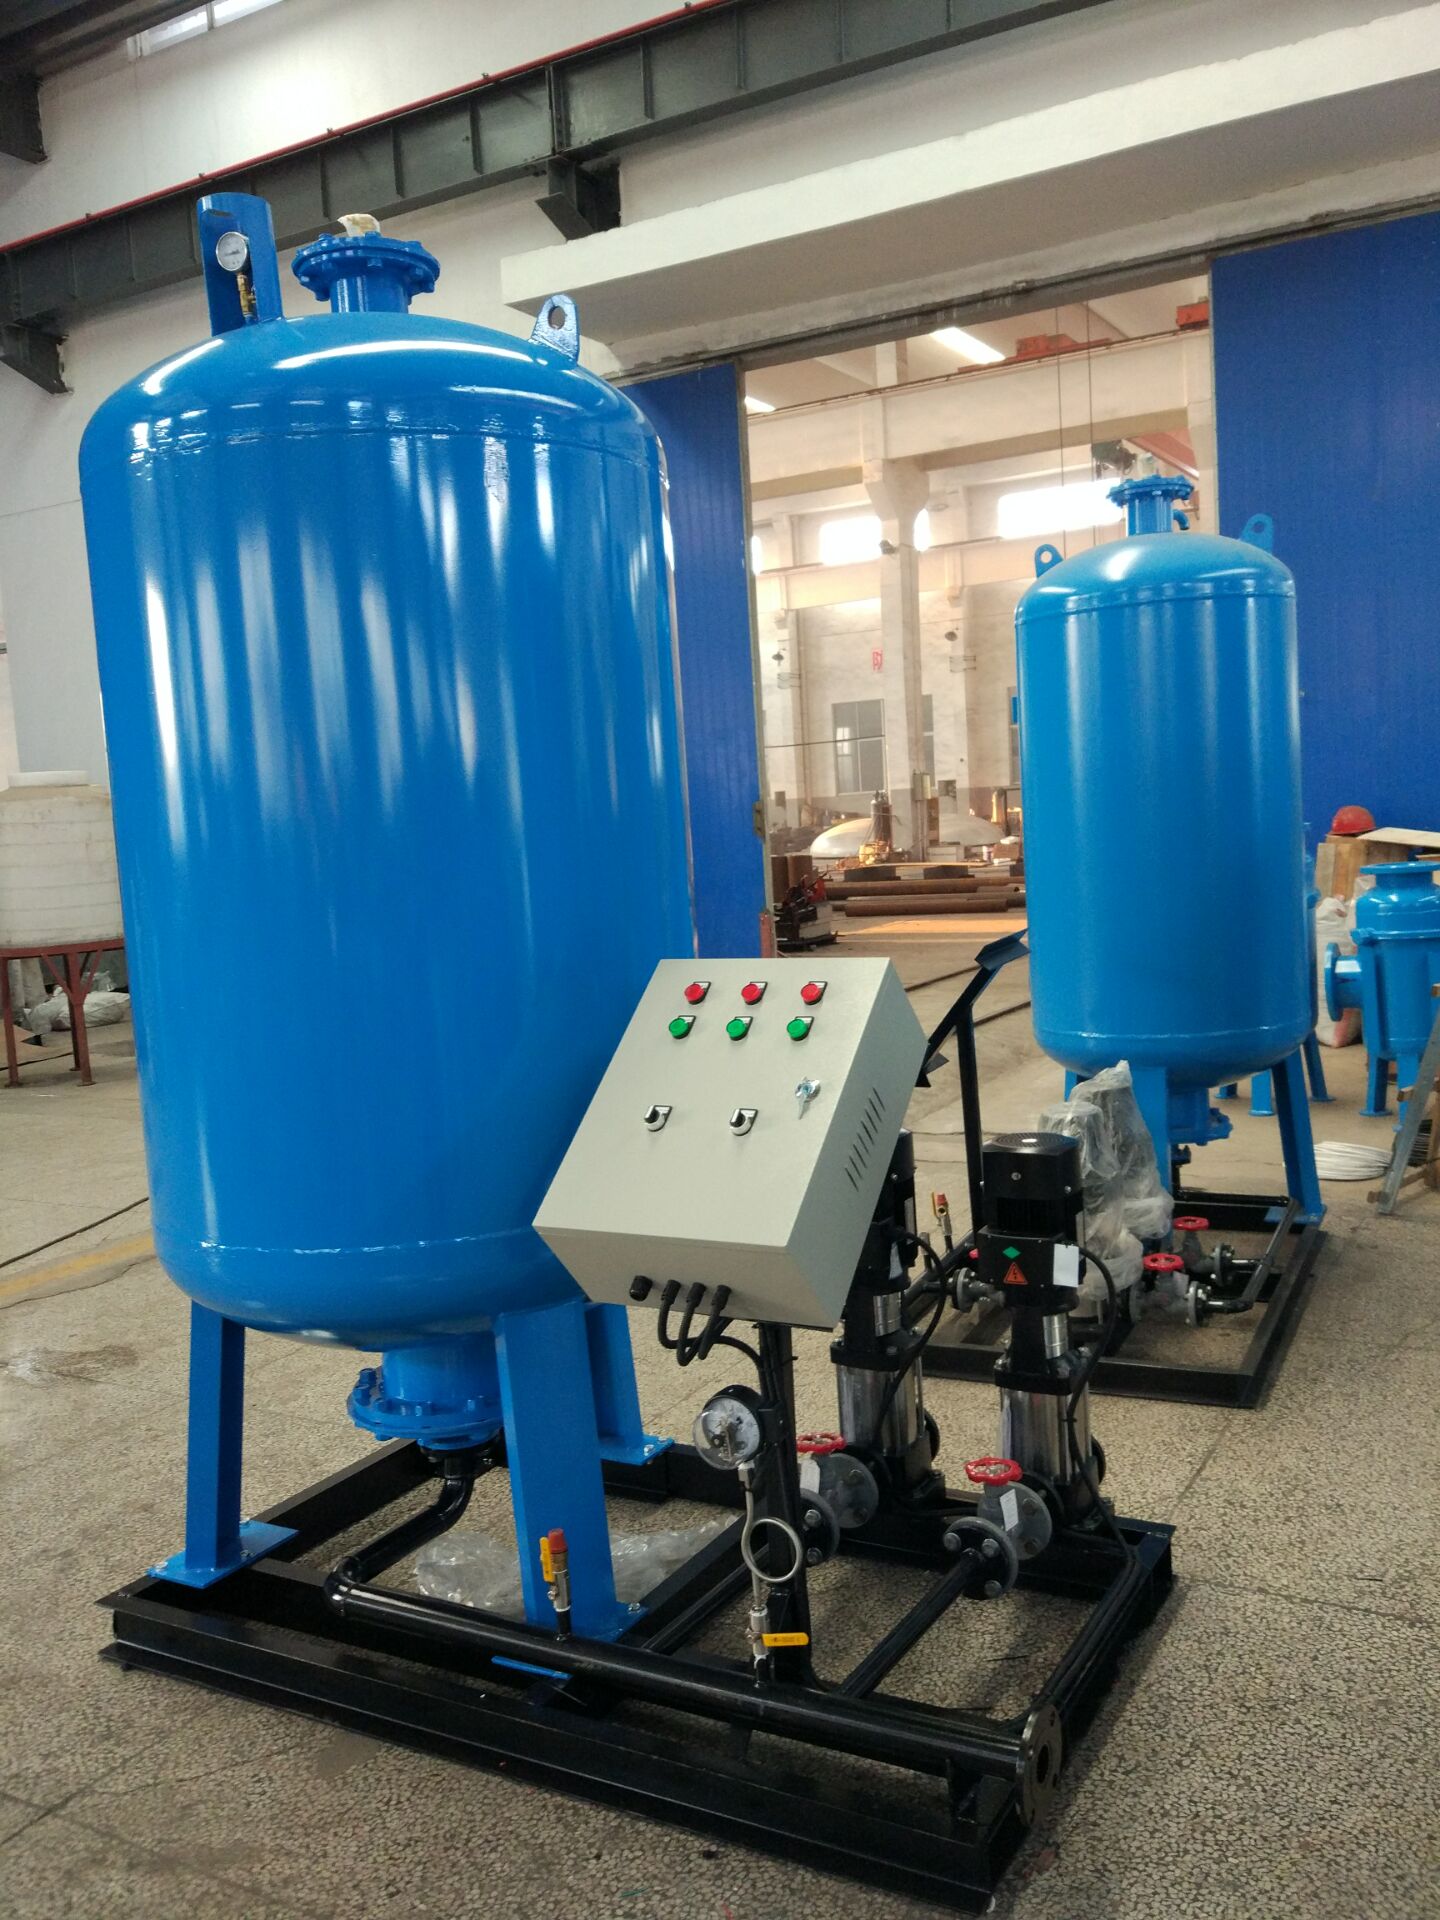 安徽蓝宜供水设备(安徽蓝蓝水务工程技术有限公司)